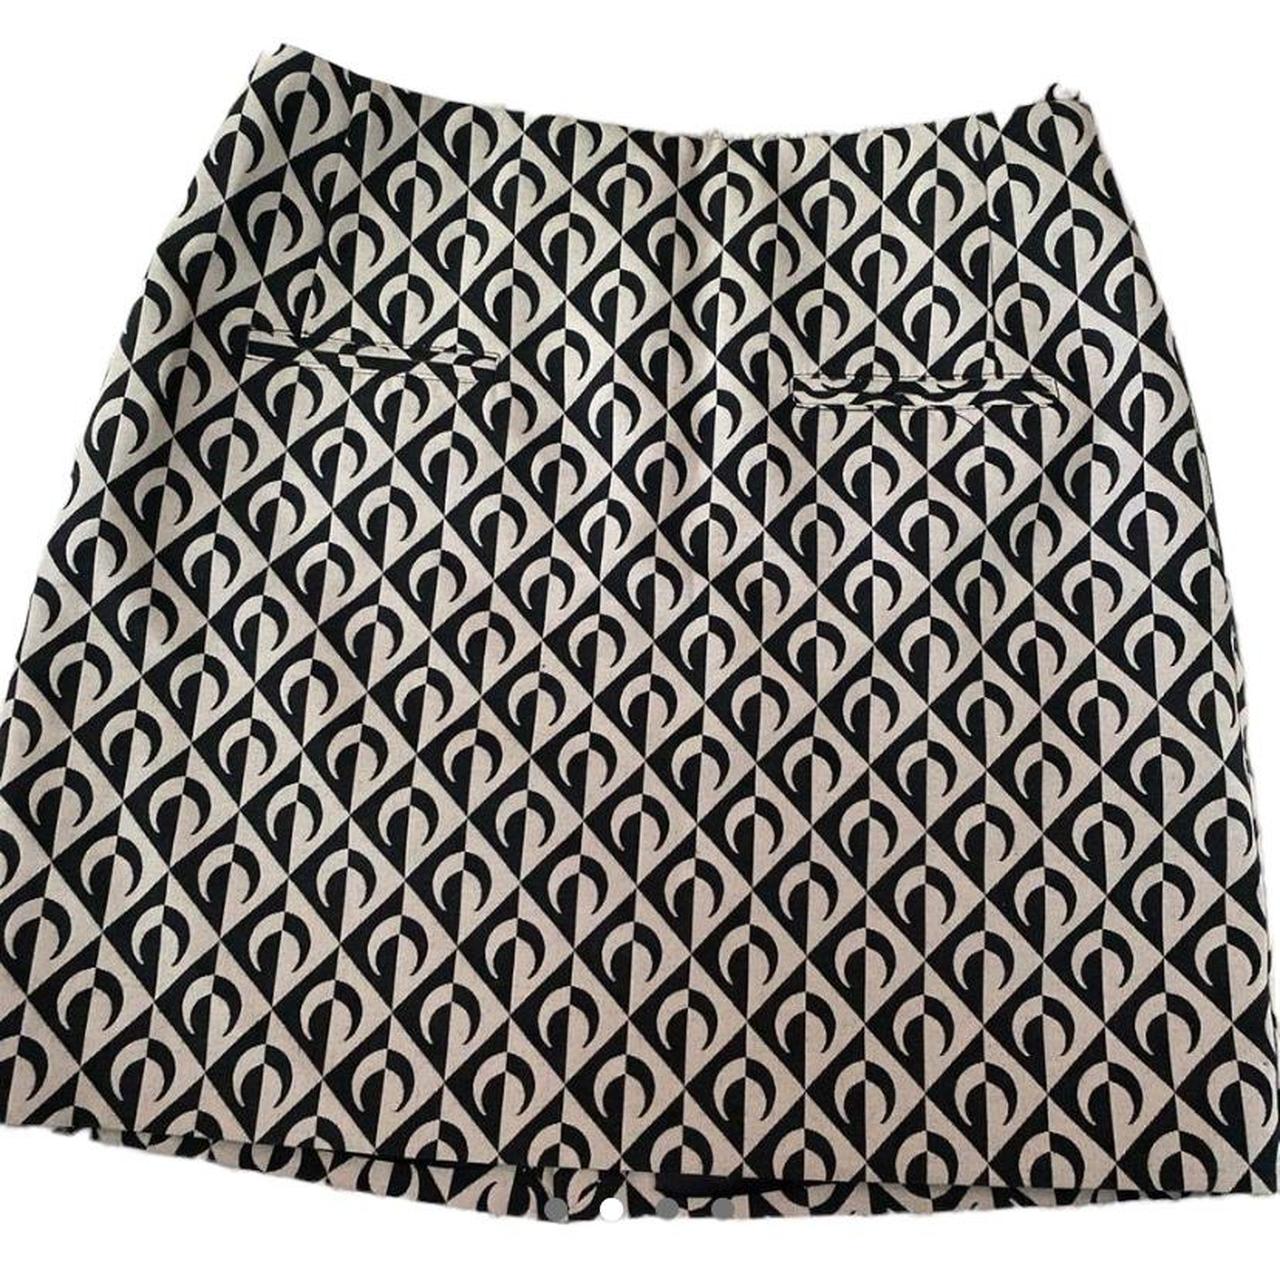 Product Image 2 - Marine Serre skirt 

-Marine Serre